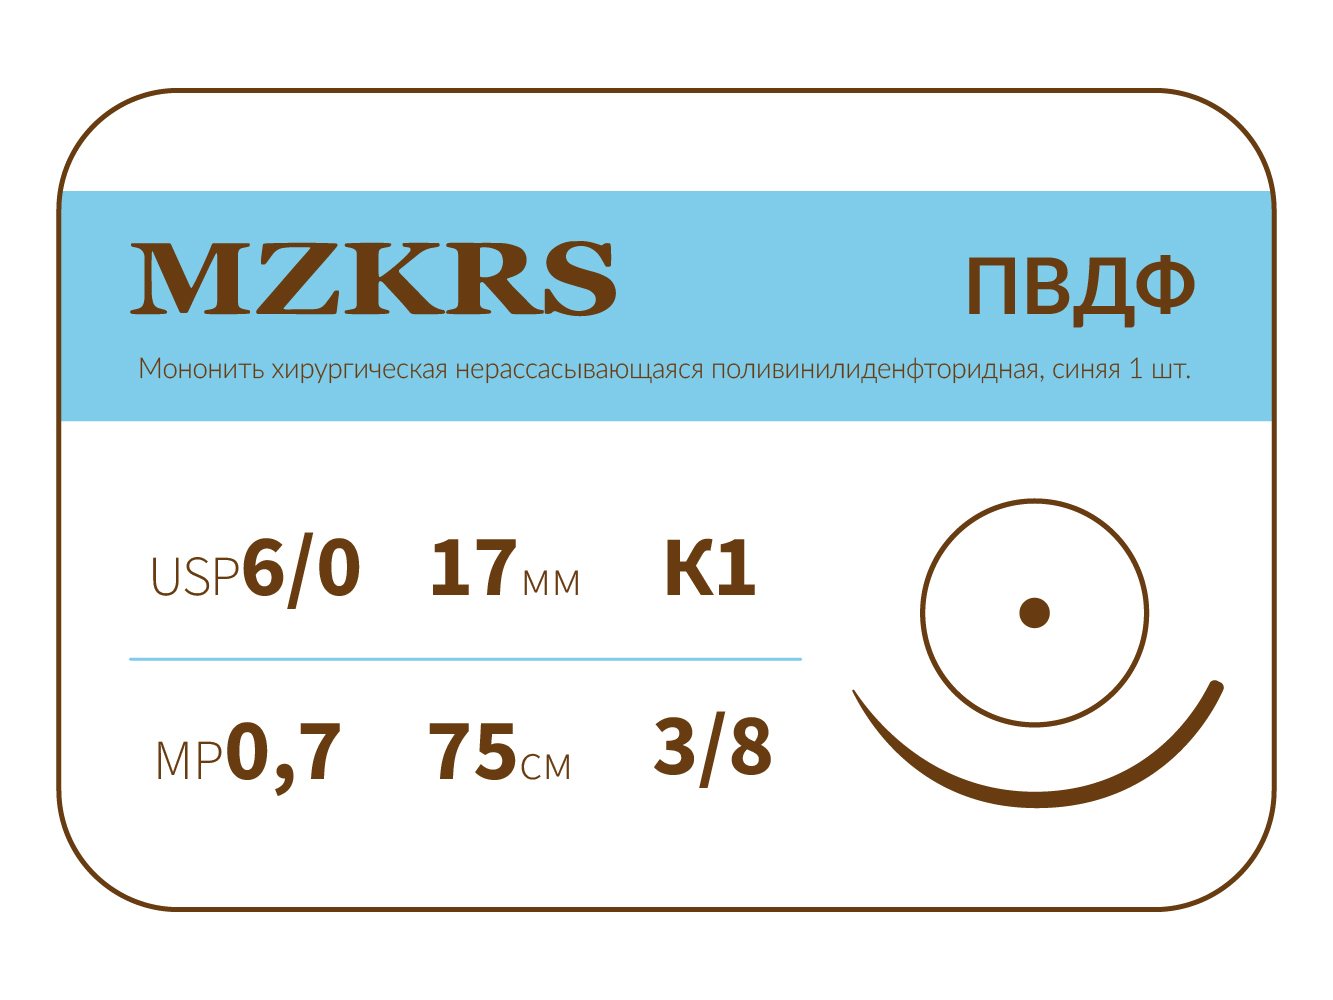 1738К1-Premium-6/0 (0.7)75 ПВДФ  хирургическая нить поливинилиденфторидная, MZKRS (Россия)